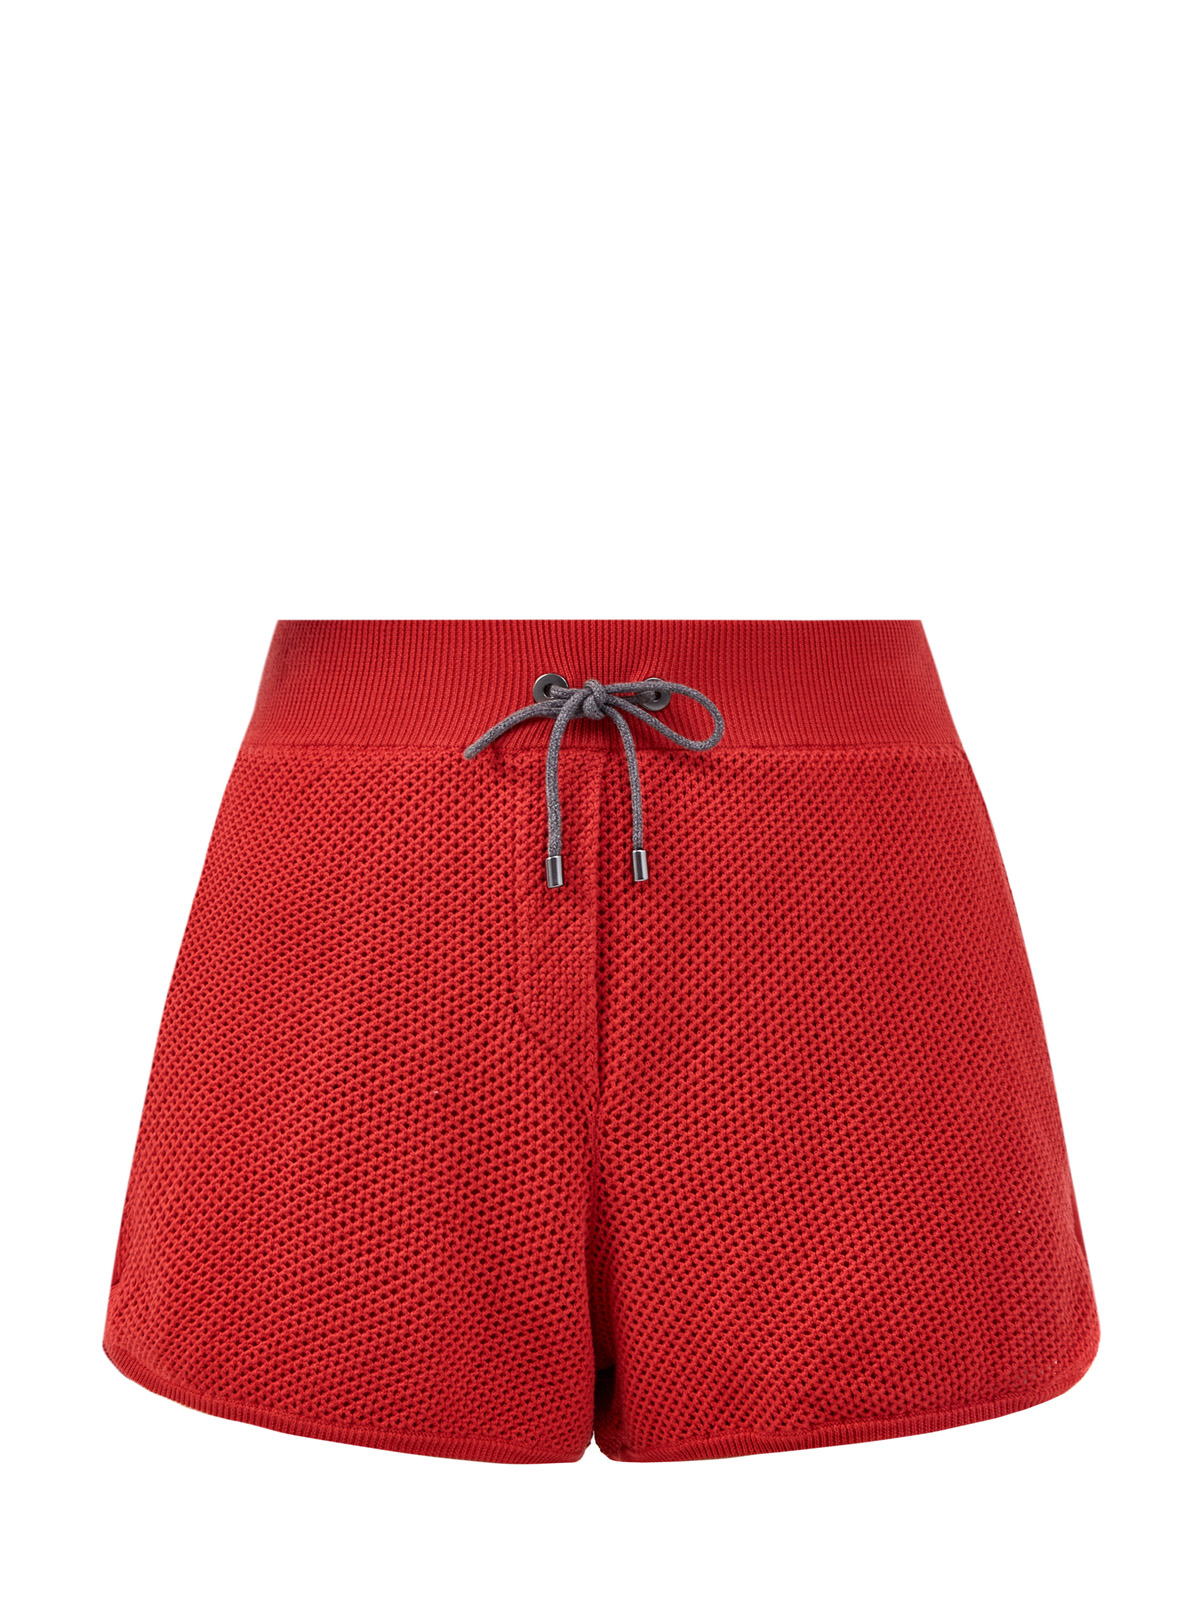 Шорты из хлопкового трикотажа с сетчатой отделкой и карманами BRUNELLO CUCINELLI, цвет красный, размер 44;38 - фото 1